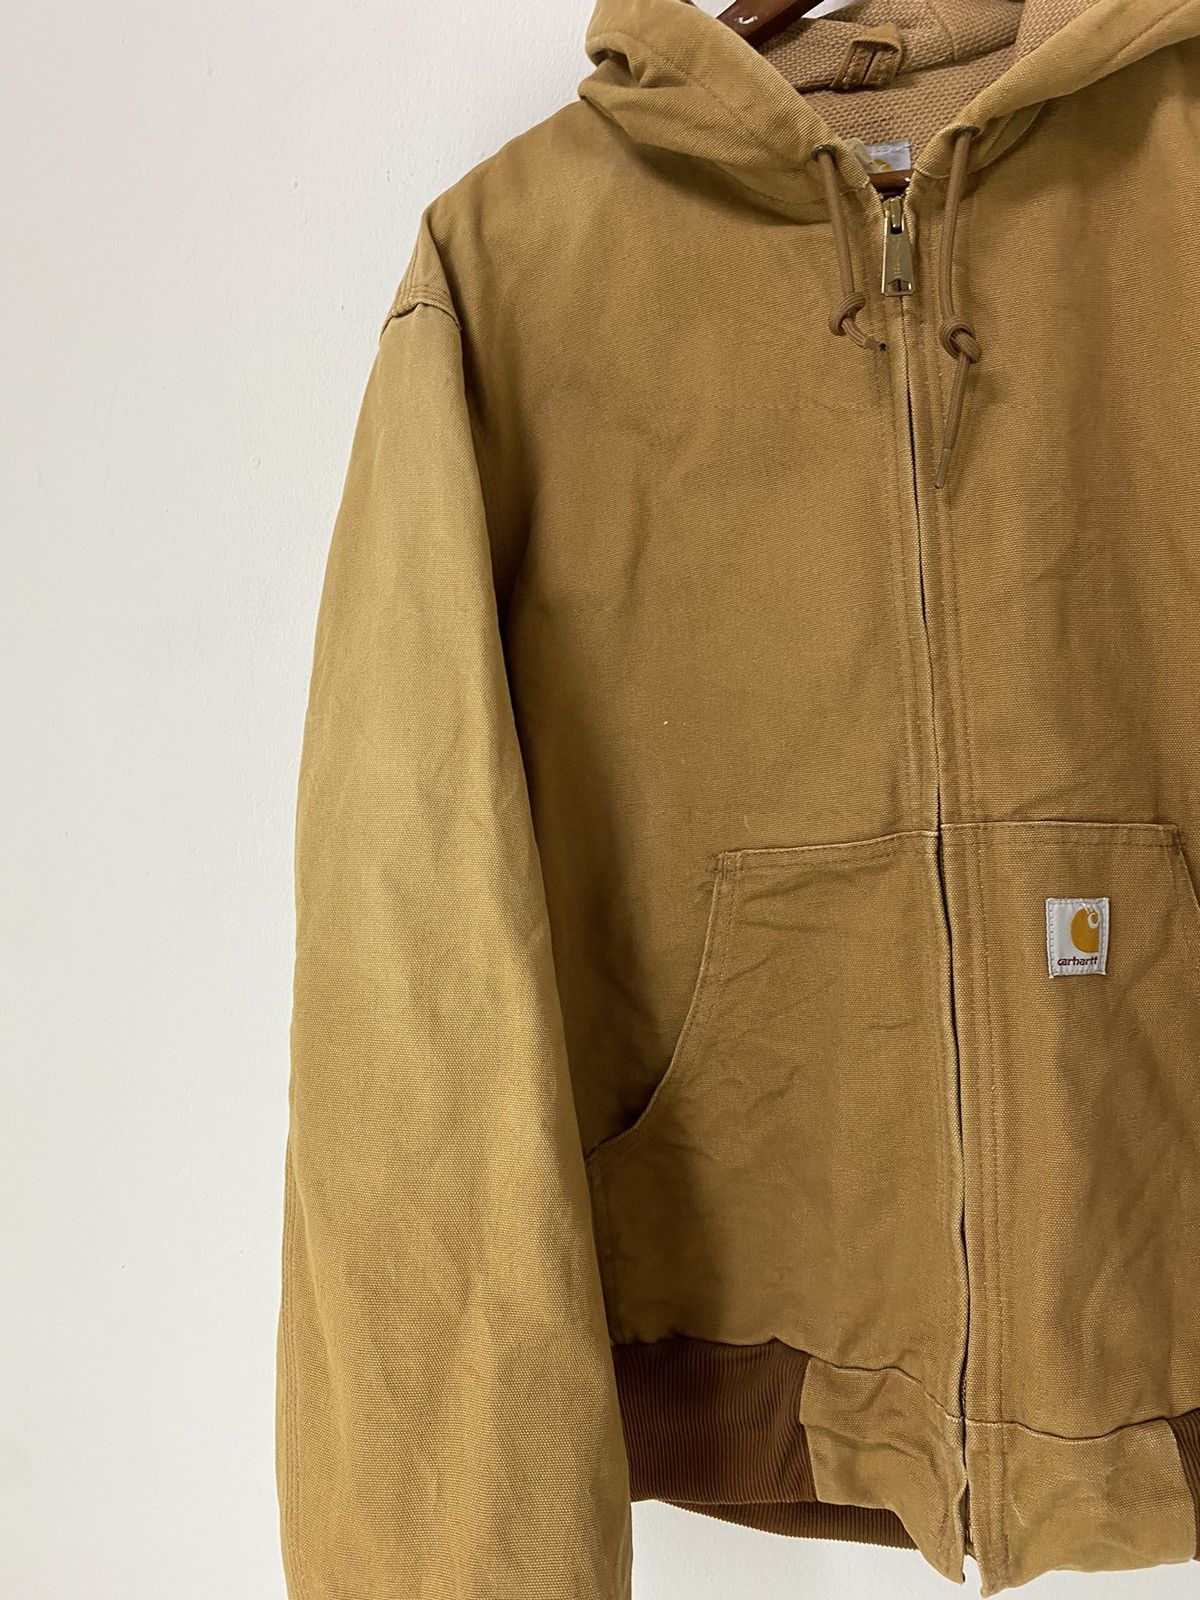 Vintage Carhartt Chore Hoodie Jacket Workwear Design - 6